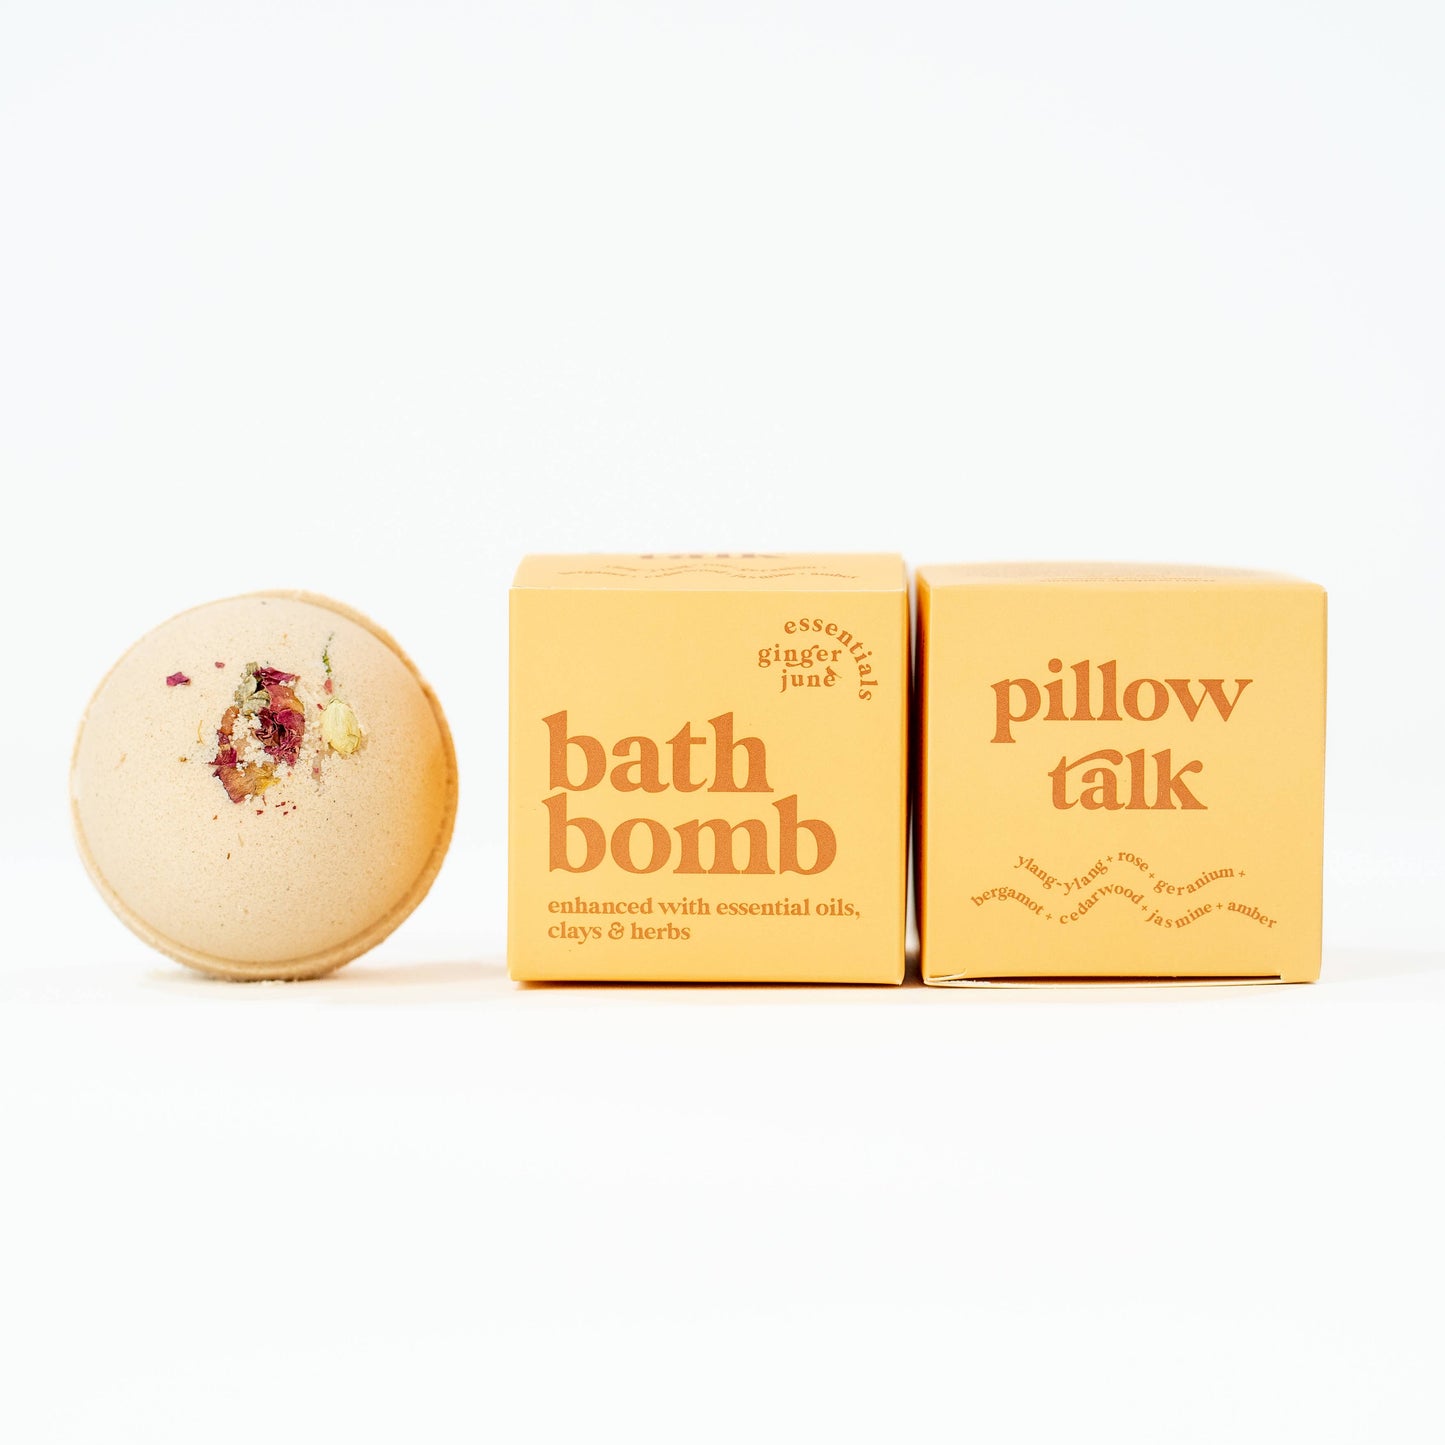 100% Botanical Bath Bomb Pillow Talk